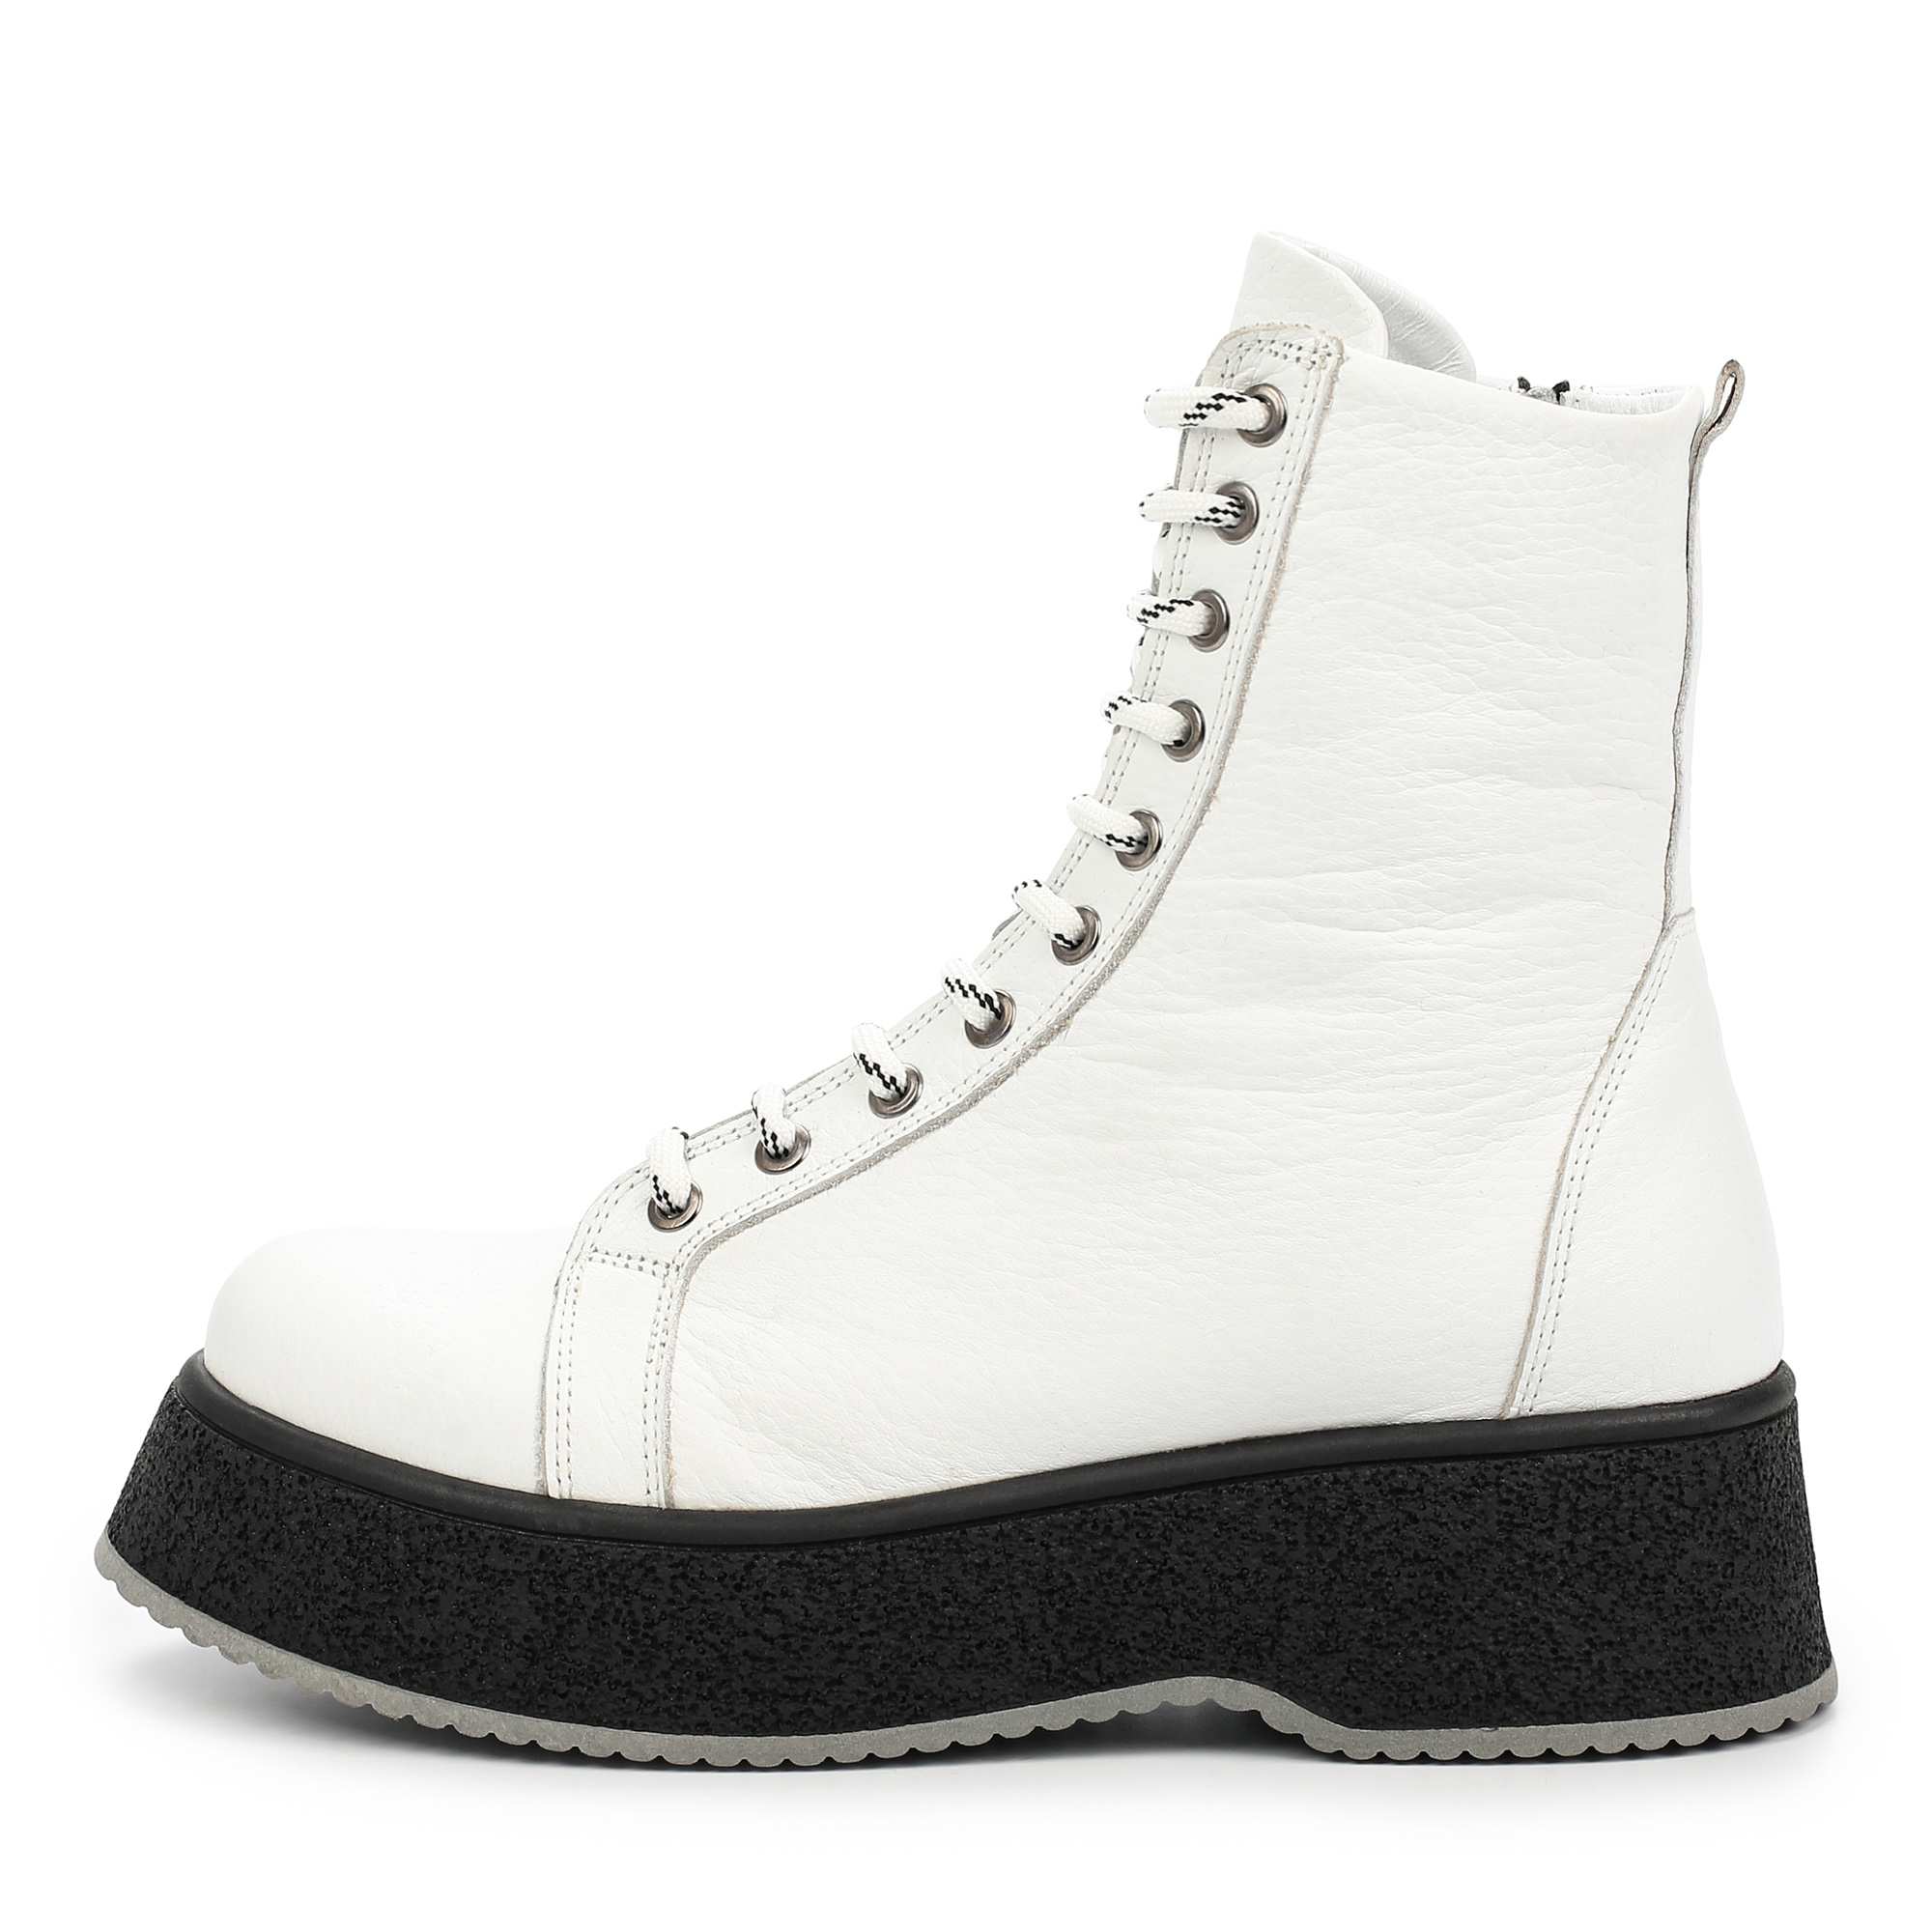 Ботинки Thomas Munz 505-240A-2101, цвет белый, размер 39 - фото 1